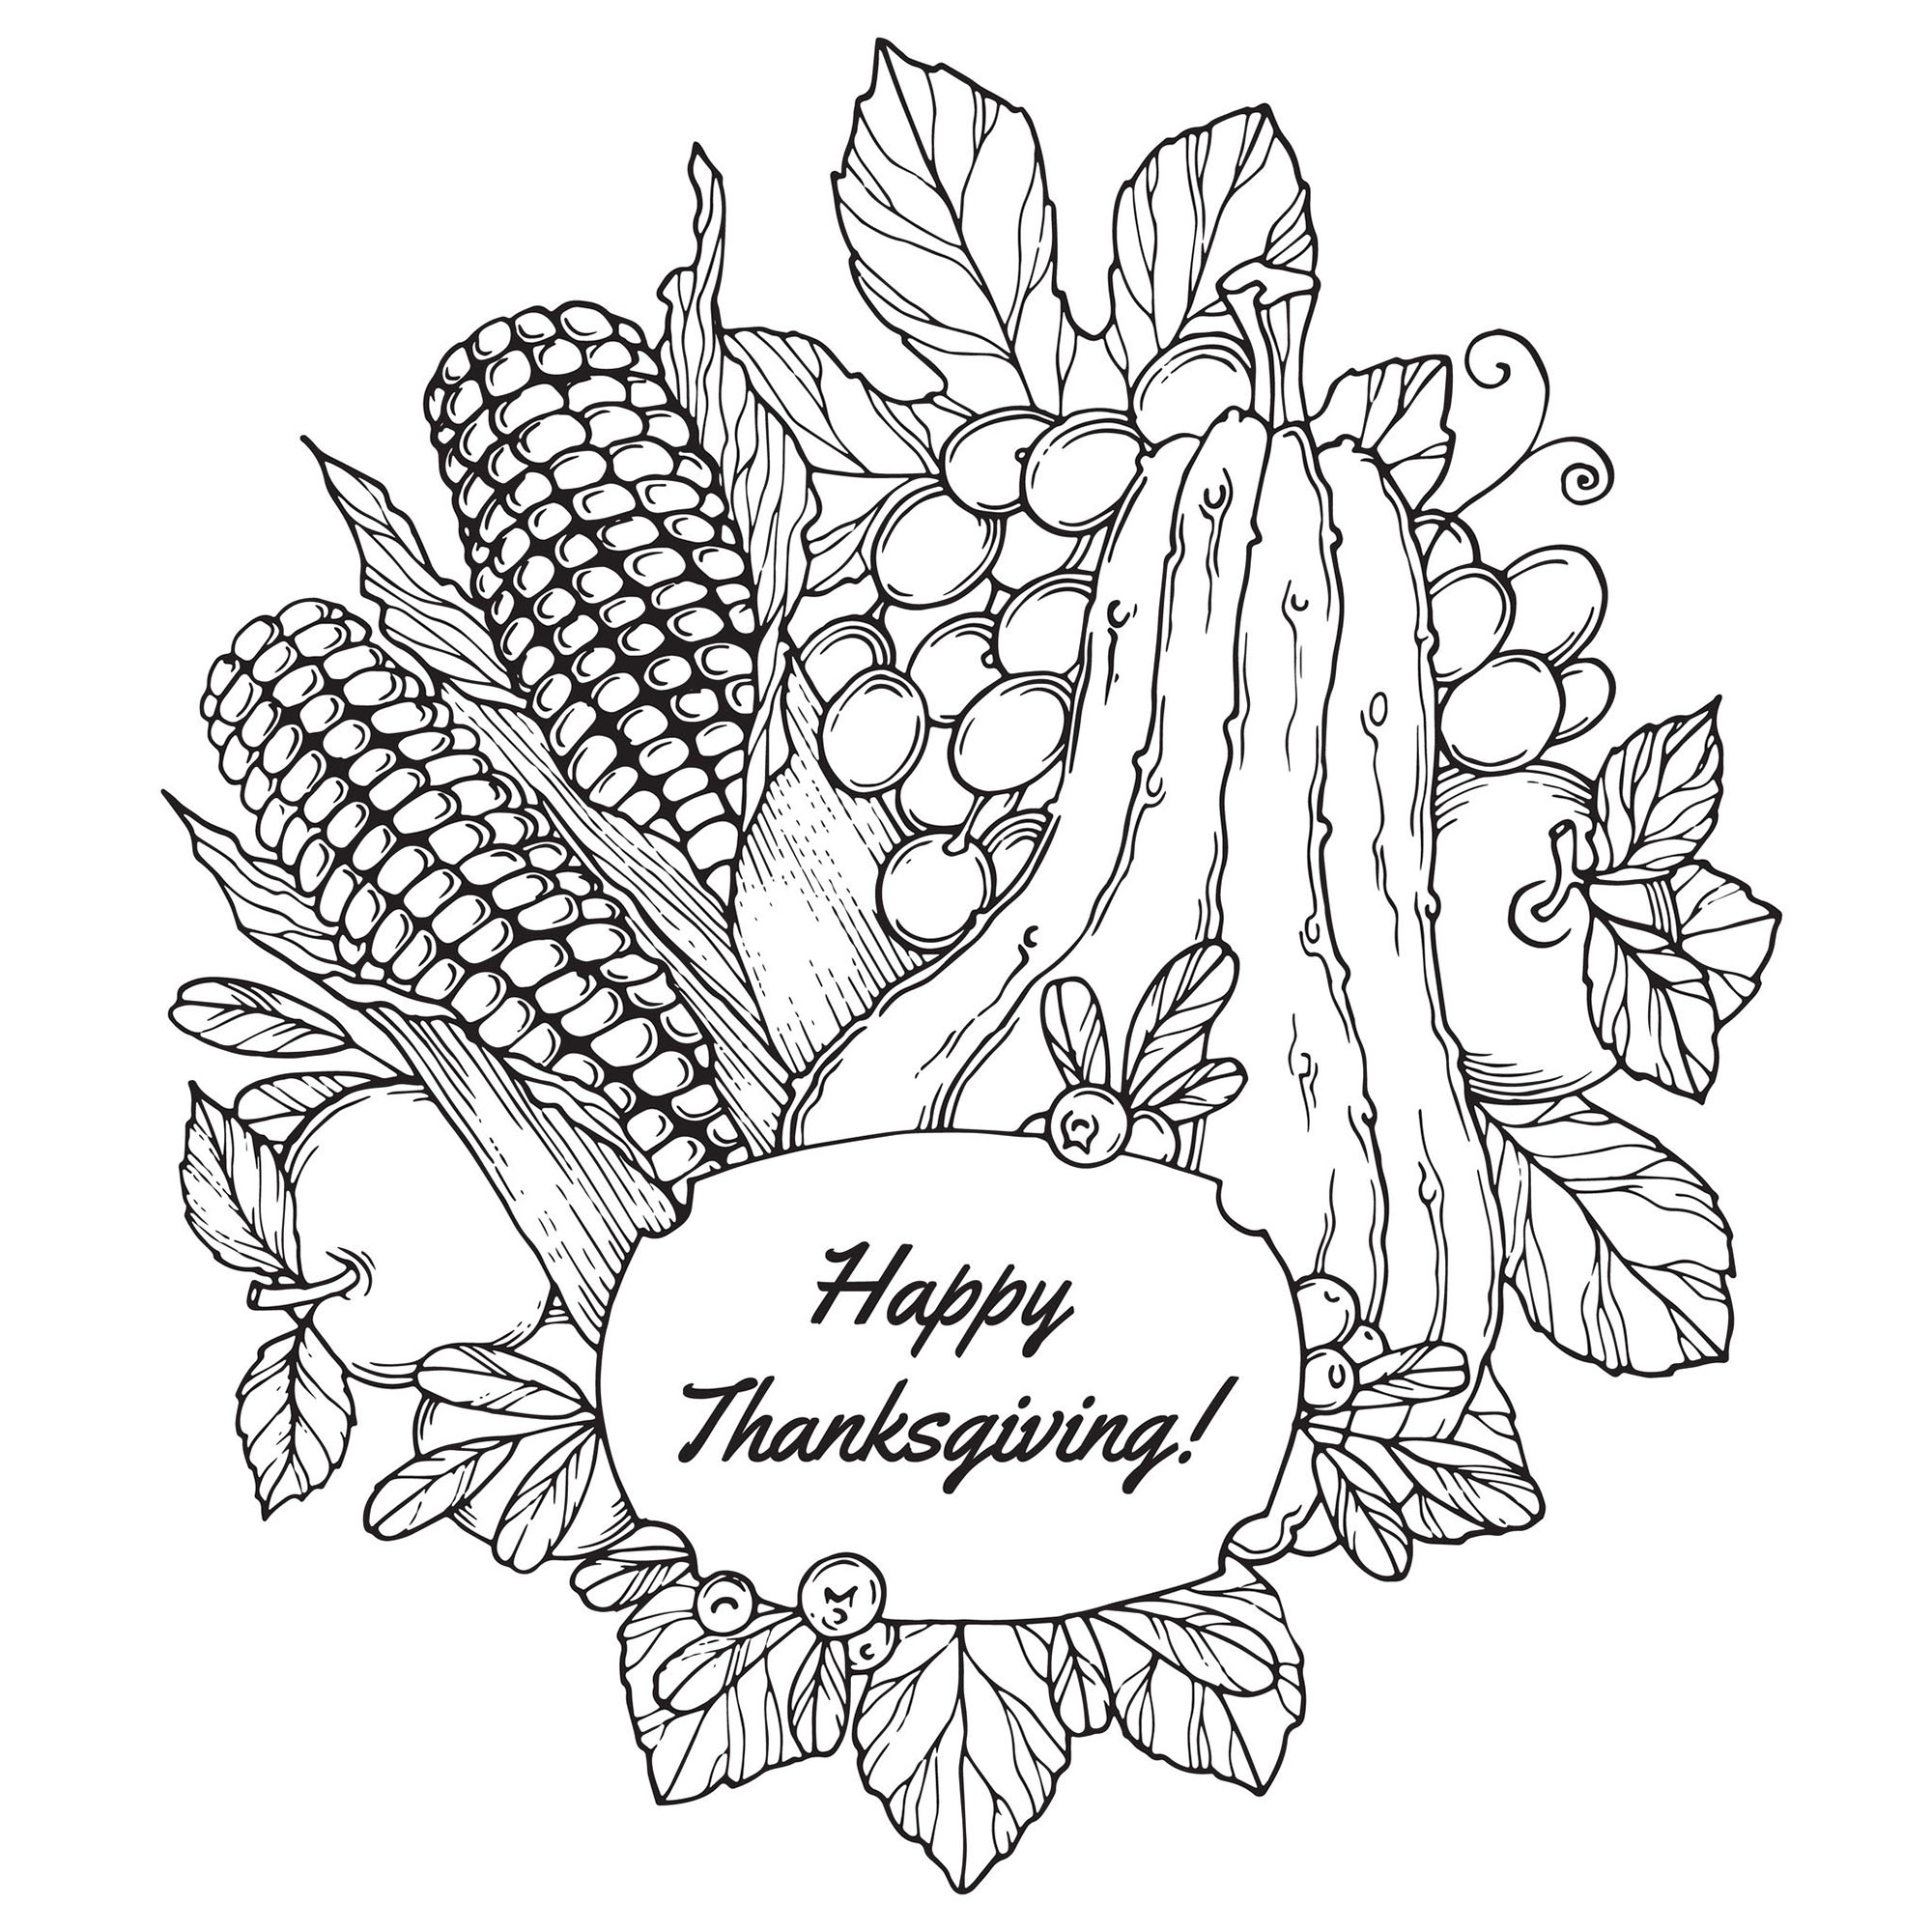 Image de Thanksgiving à colorier, facile pour enfants